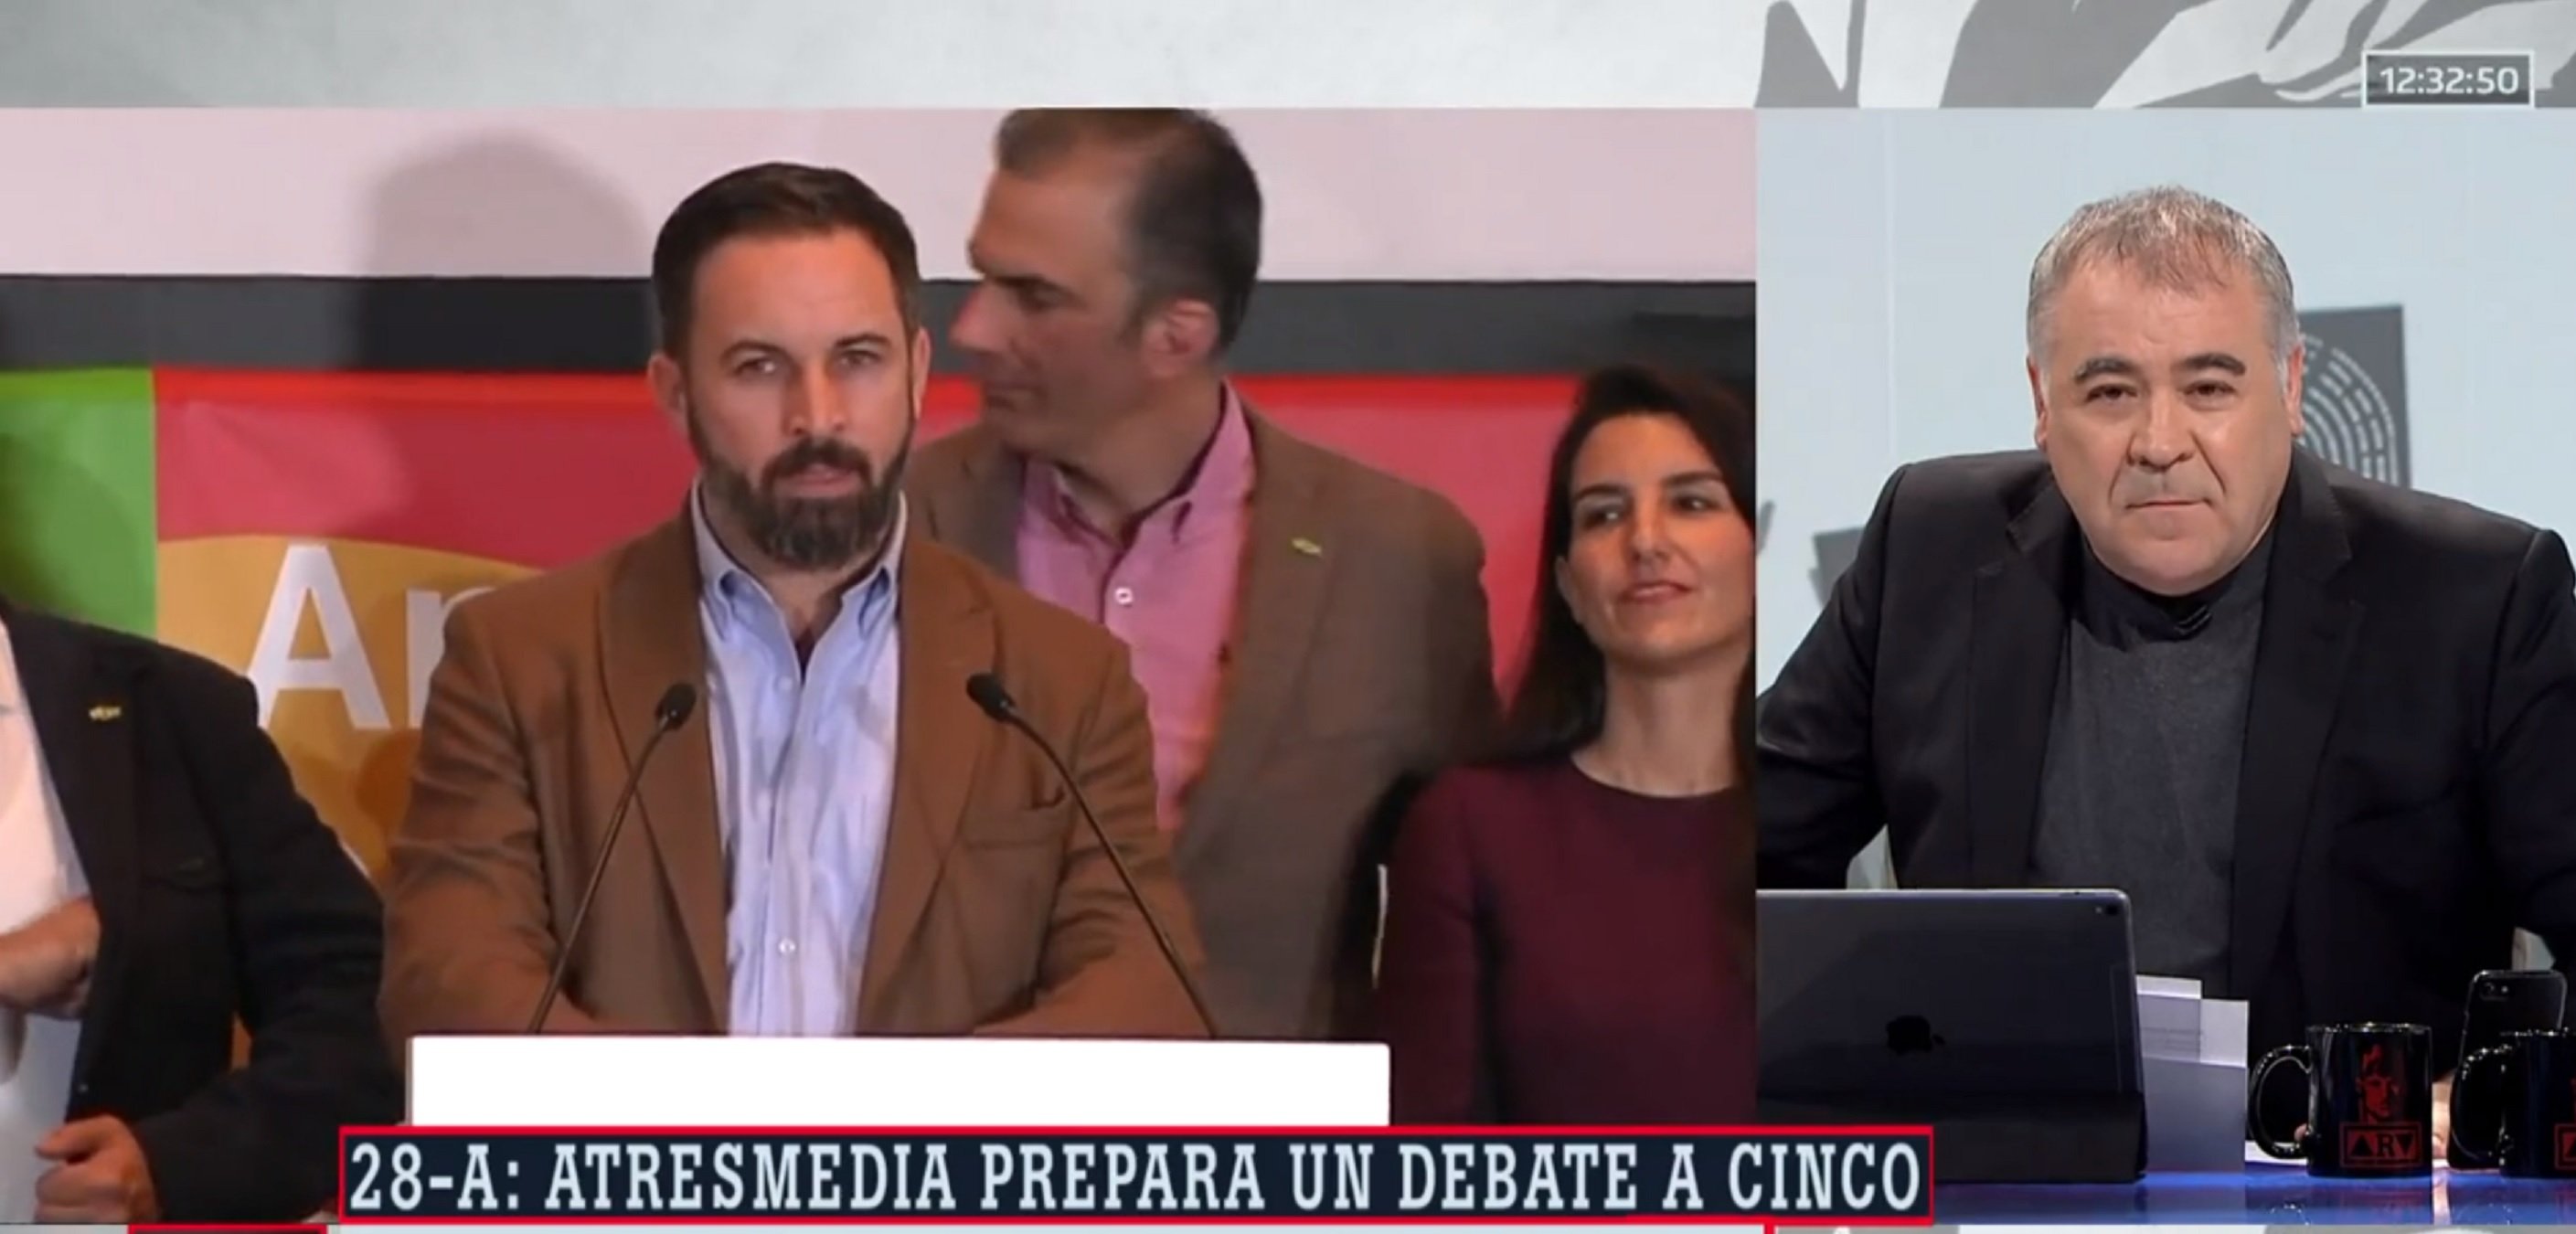 Ferreras justifica el debate a 5 (con Vox y sin indepes) y la red vomita